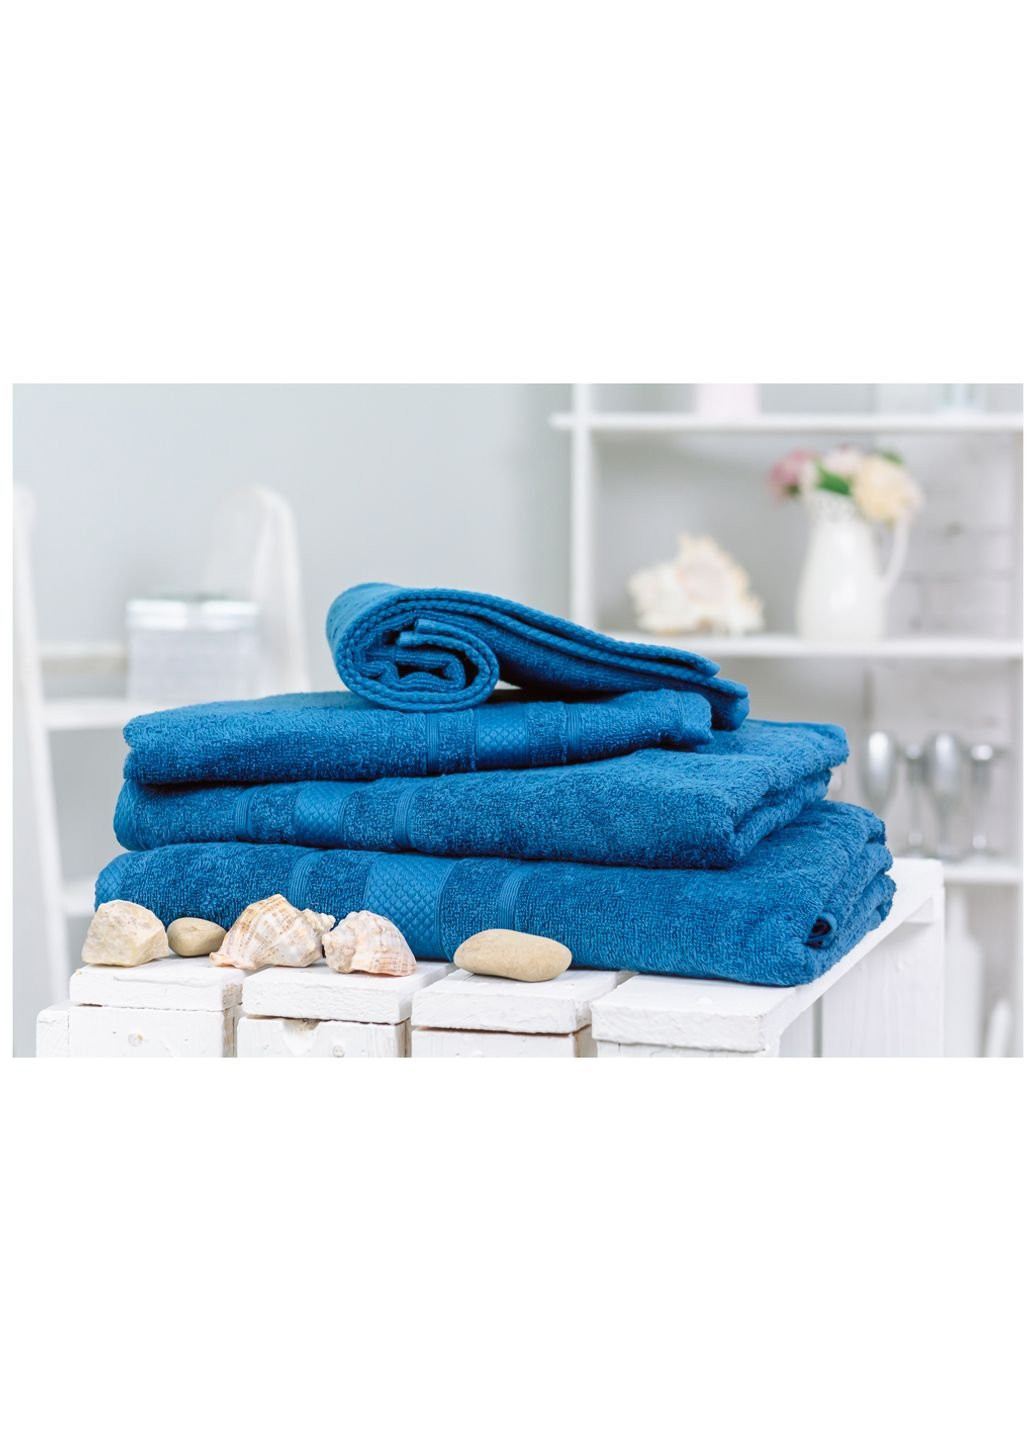 Mirson полотенце набор банный №5015 softness blueberry 40x70, 50x90, 70x140, (2200003183399) синий производство - Украина